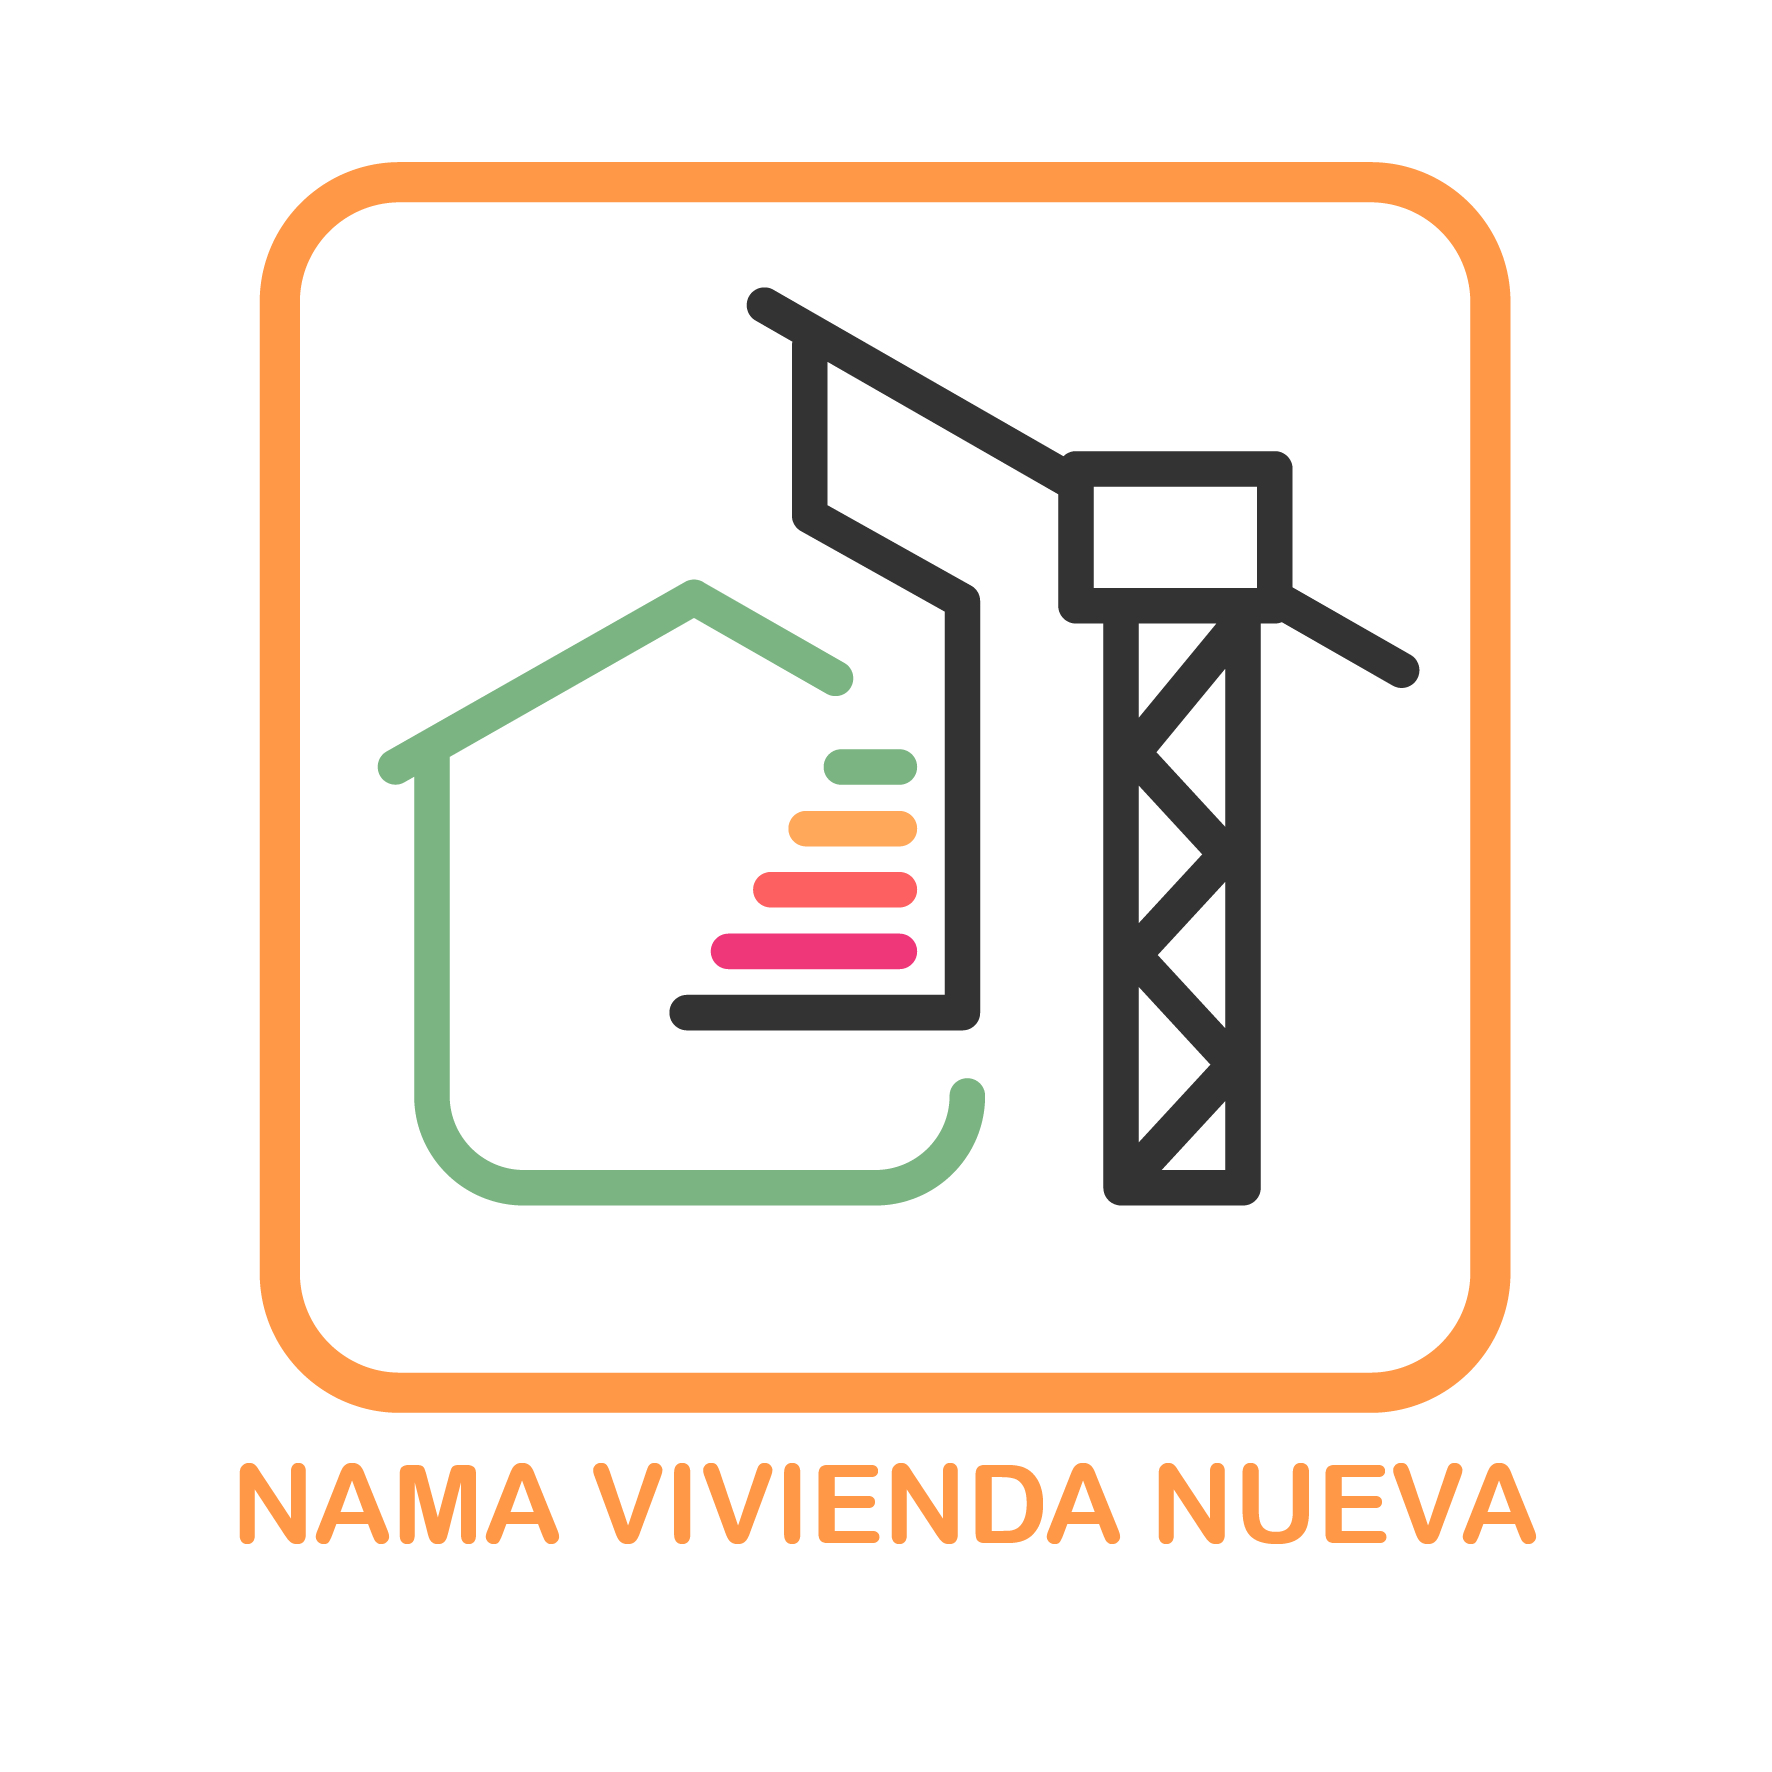 Icon of 01 NAMA Vivienda Nueva